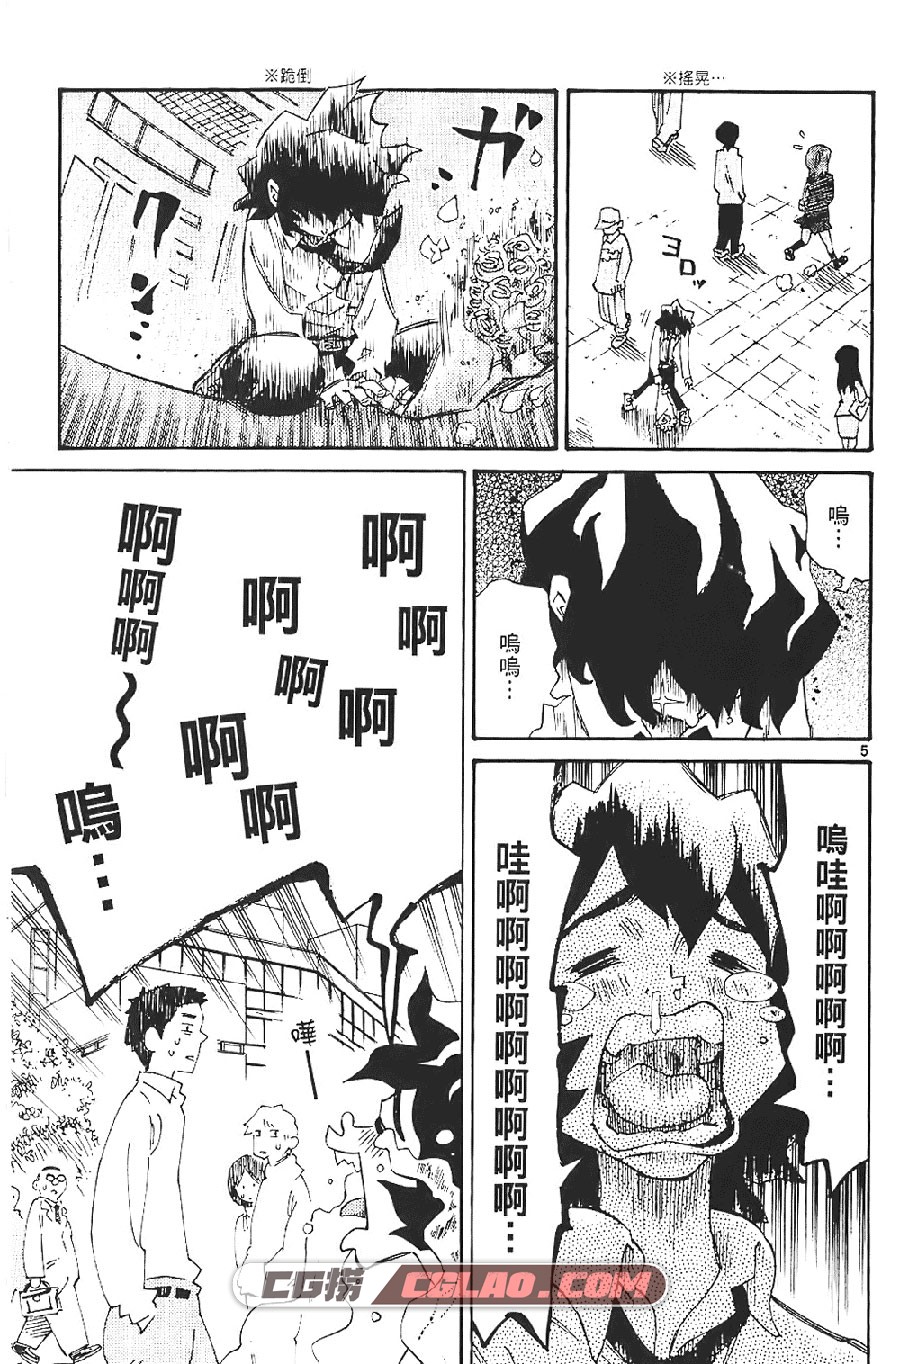 恋爱战队 森泰士 1-6卷 漫画完结全集下载 百度云下载,Rangeman004.jpg